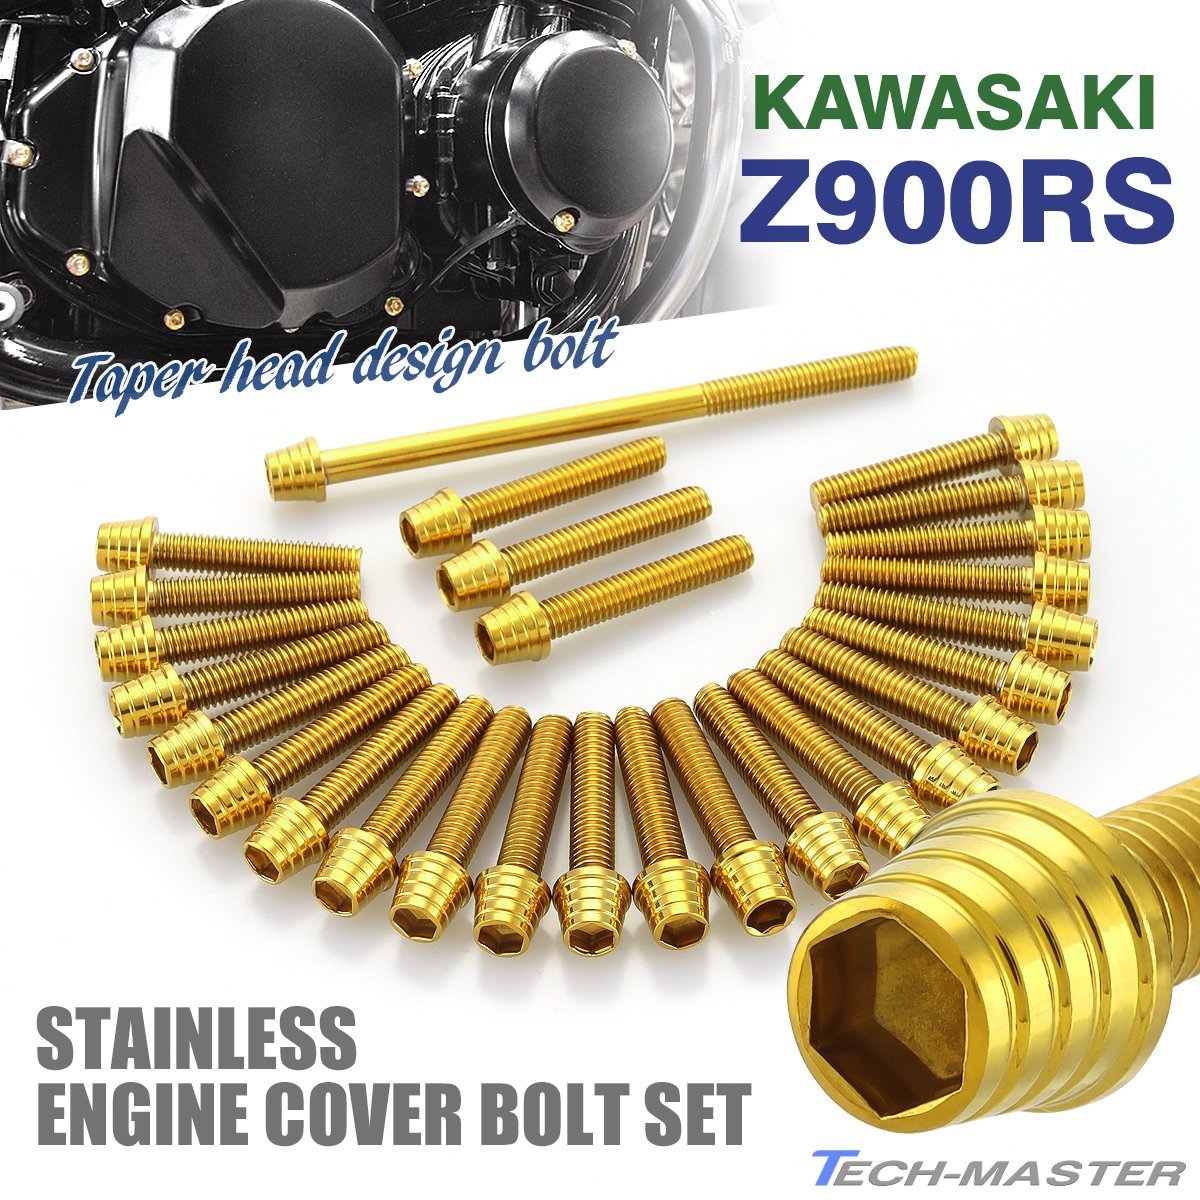 Z900RS エンジンカバーボルト 27本セット ステンレス製 テーパーシェルヘッド カワサキ車用 ゴールドカラー TB8171_画像1